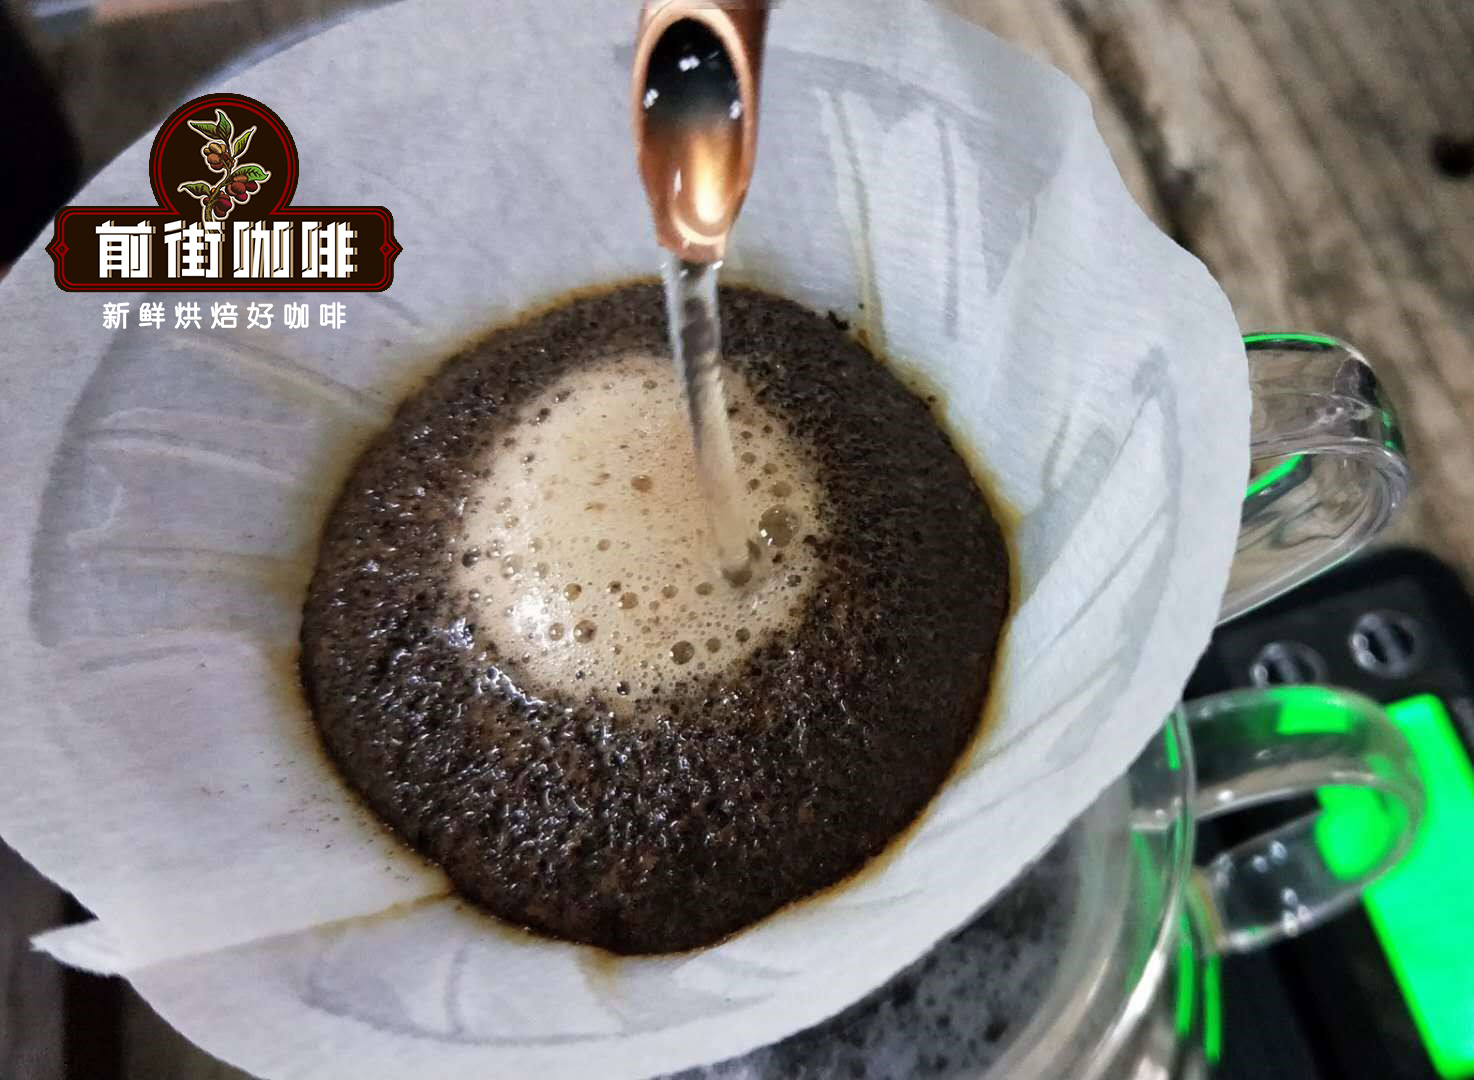 現磨咖啡是最新鮮咖啡的嗎?速溶咖啡和現磨咖啡哪個好喝